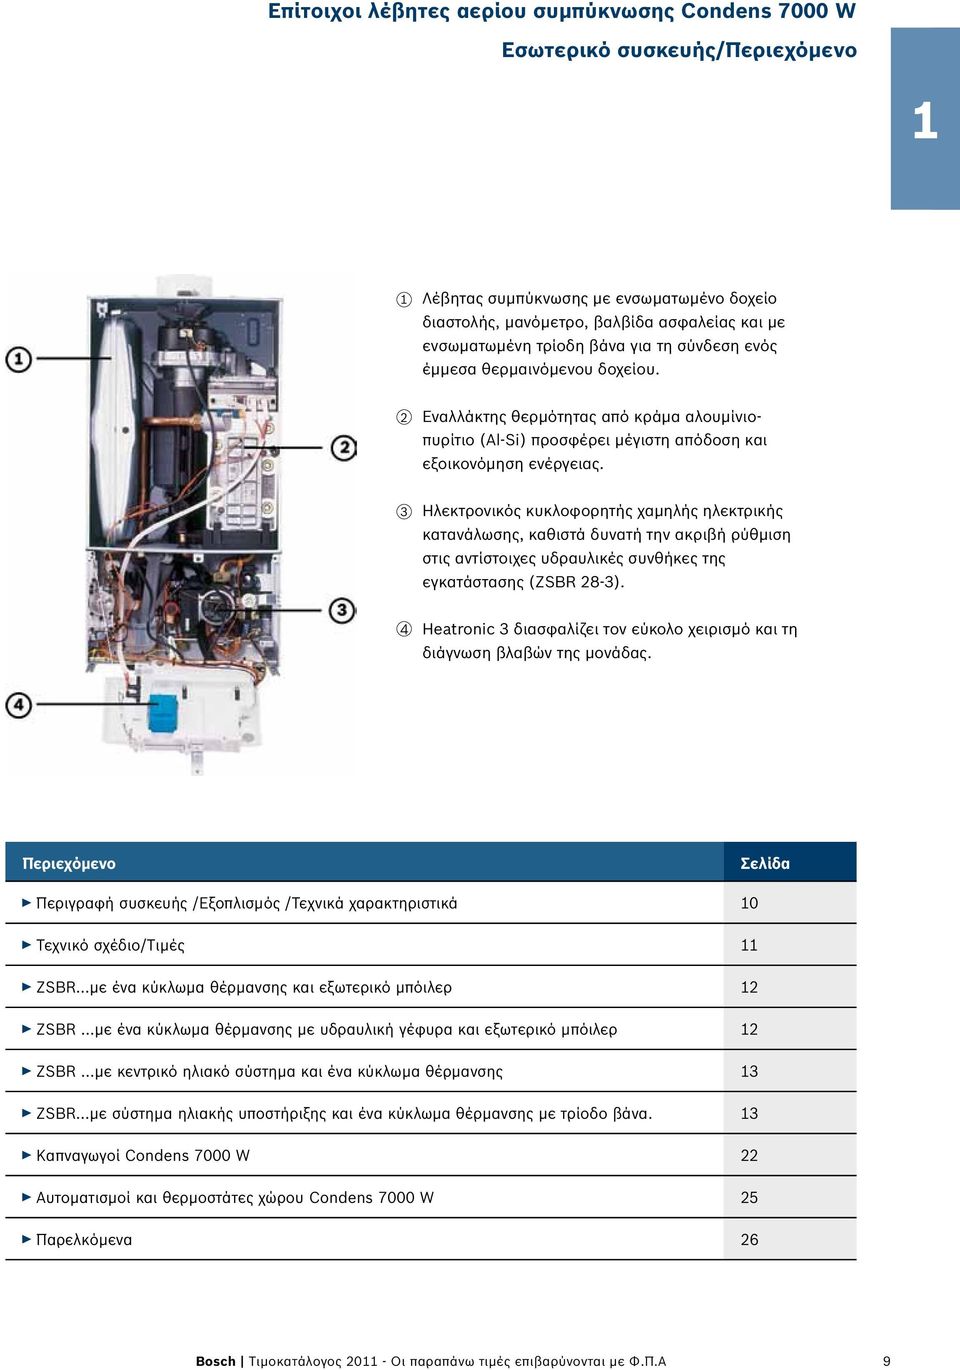 3 Ηλεκτρονικός κυκλοφορητής χαμηλής ηλεκτρικής κατανάλωσης, καθιστά δυνατή την ακριβή ρύθμιση στις αντίστοιχες υδραυλικές συνθήκες της εγκατάστασης (ZSBR 28-3).